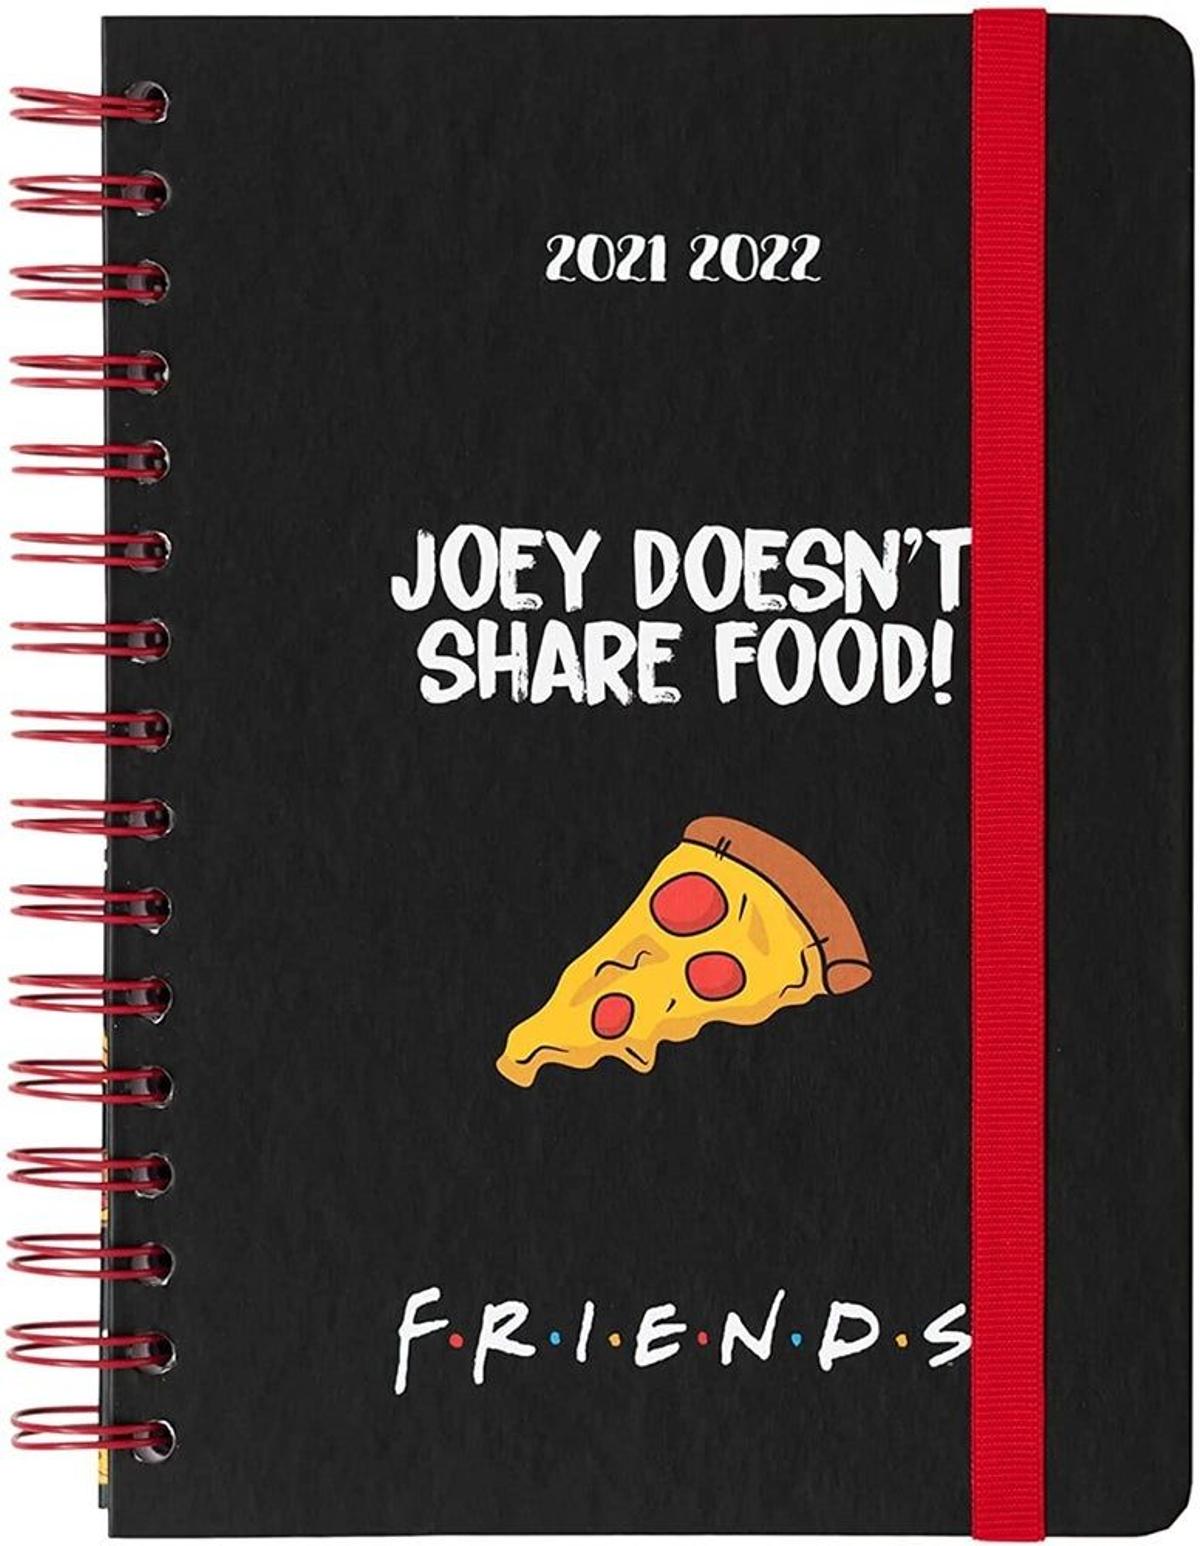 Agenda de Friends con lo que más nos gusta en el mundo: pizza